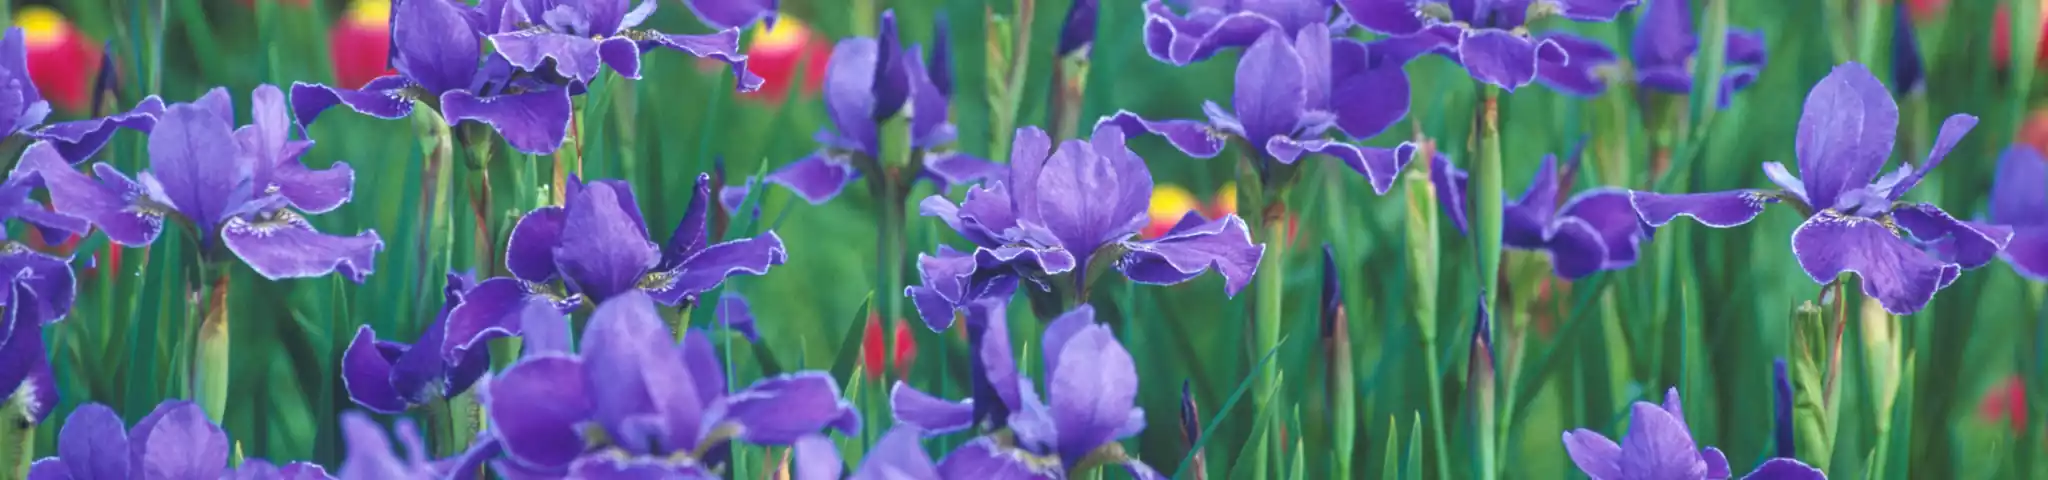 Iris flowers in garden